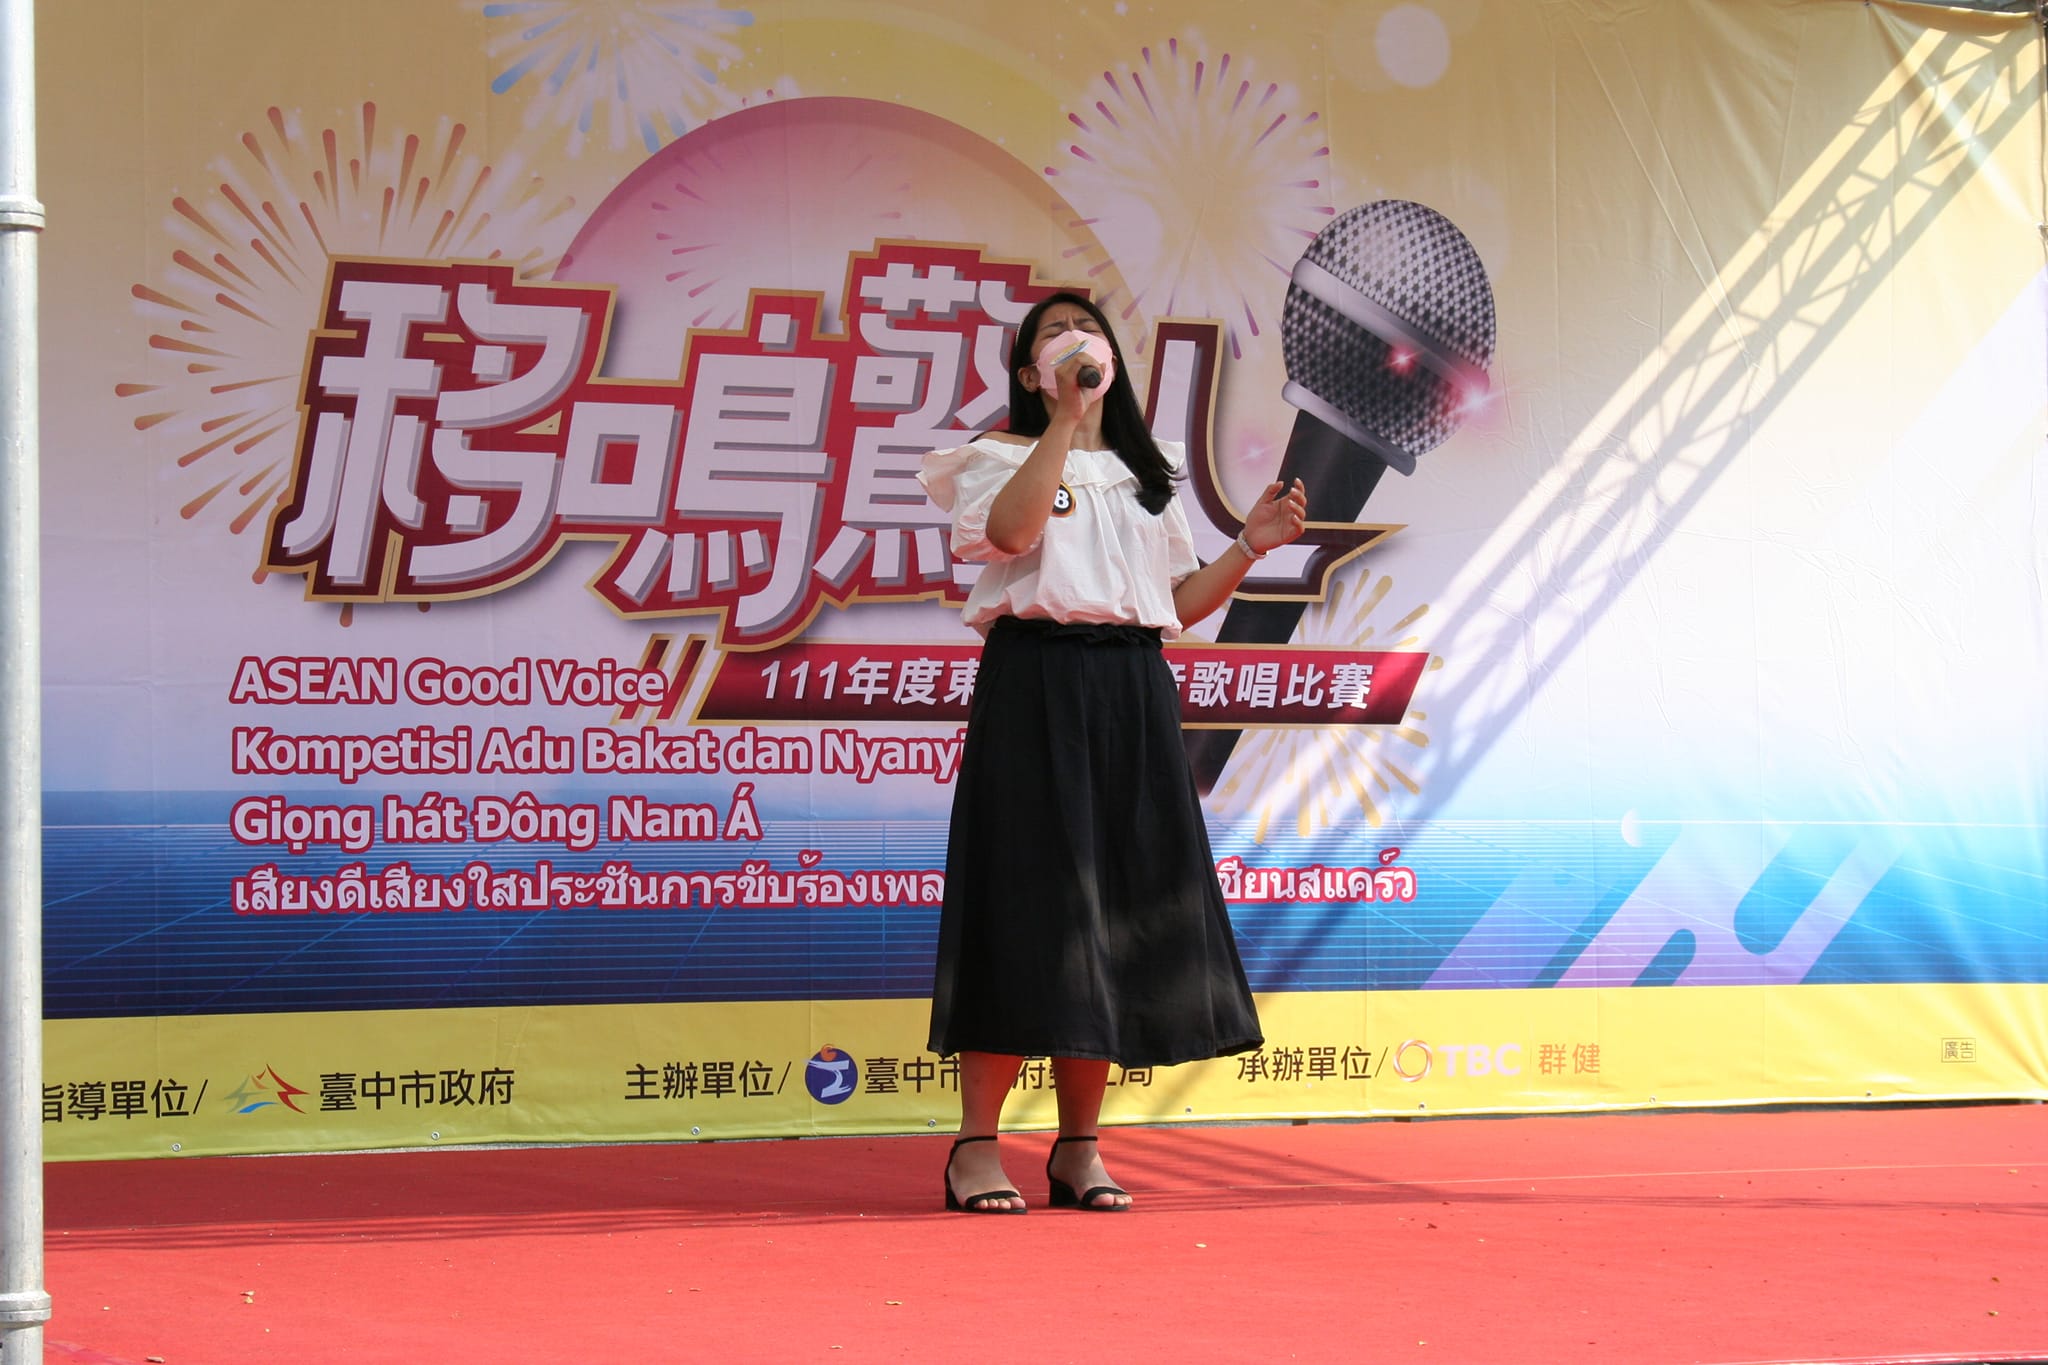 Kompetisi menyanyi ASEAN yang lalu, para peserta membawakan penampilan yang luar biasa.  (Sumber foto : Facebook 台灣廣播公司台中電台)